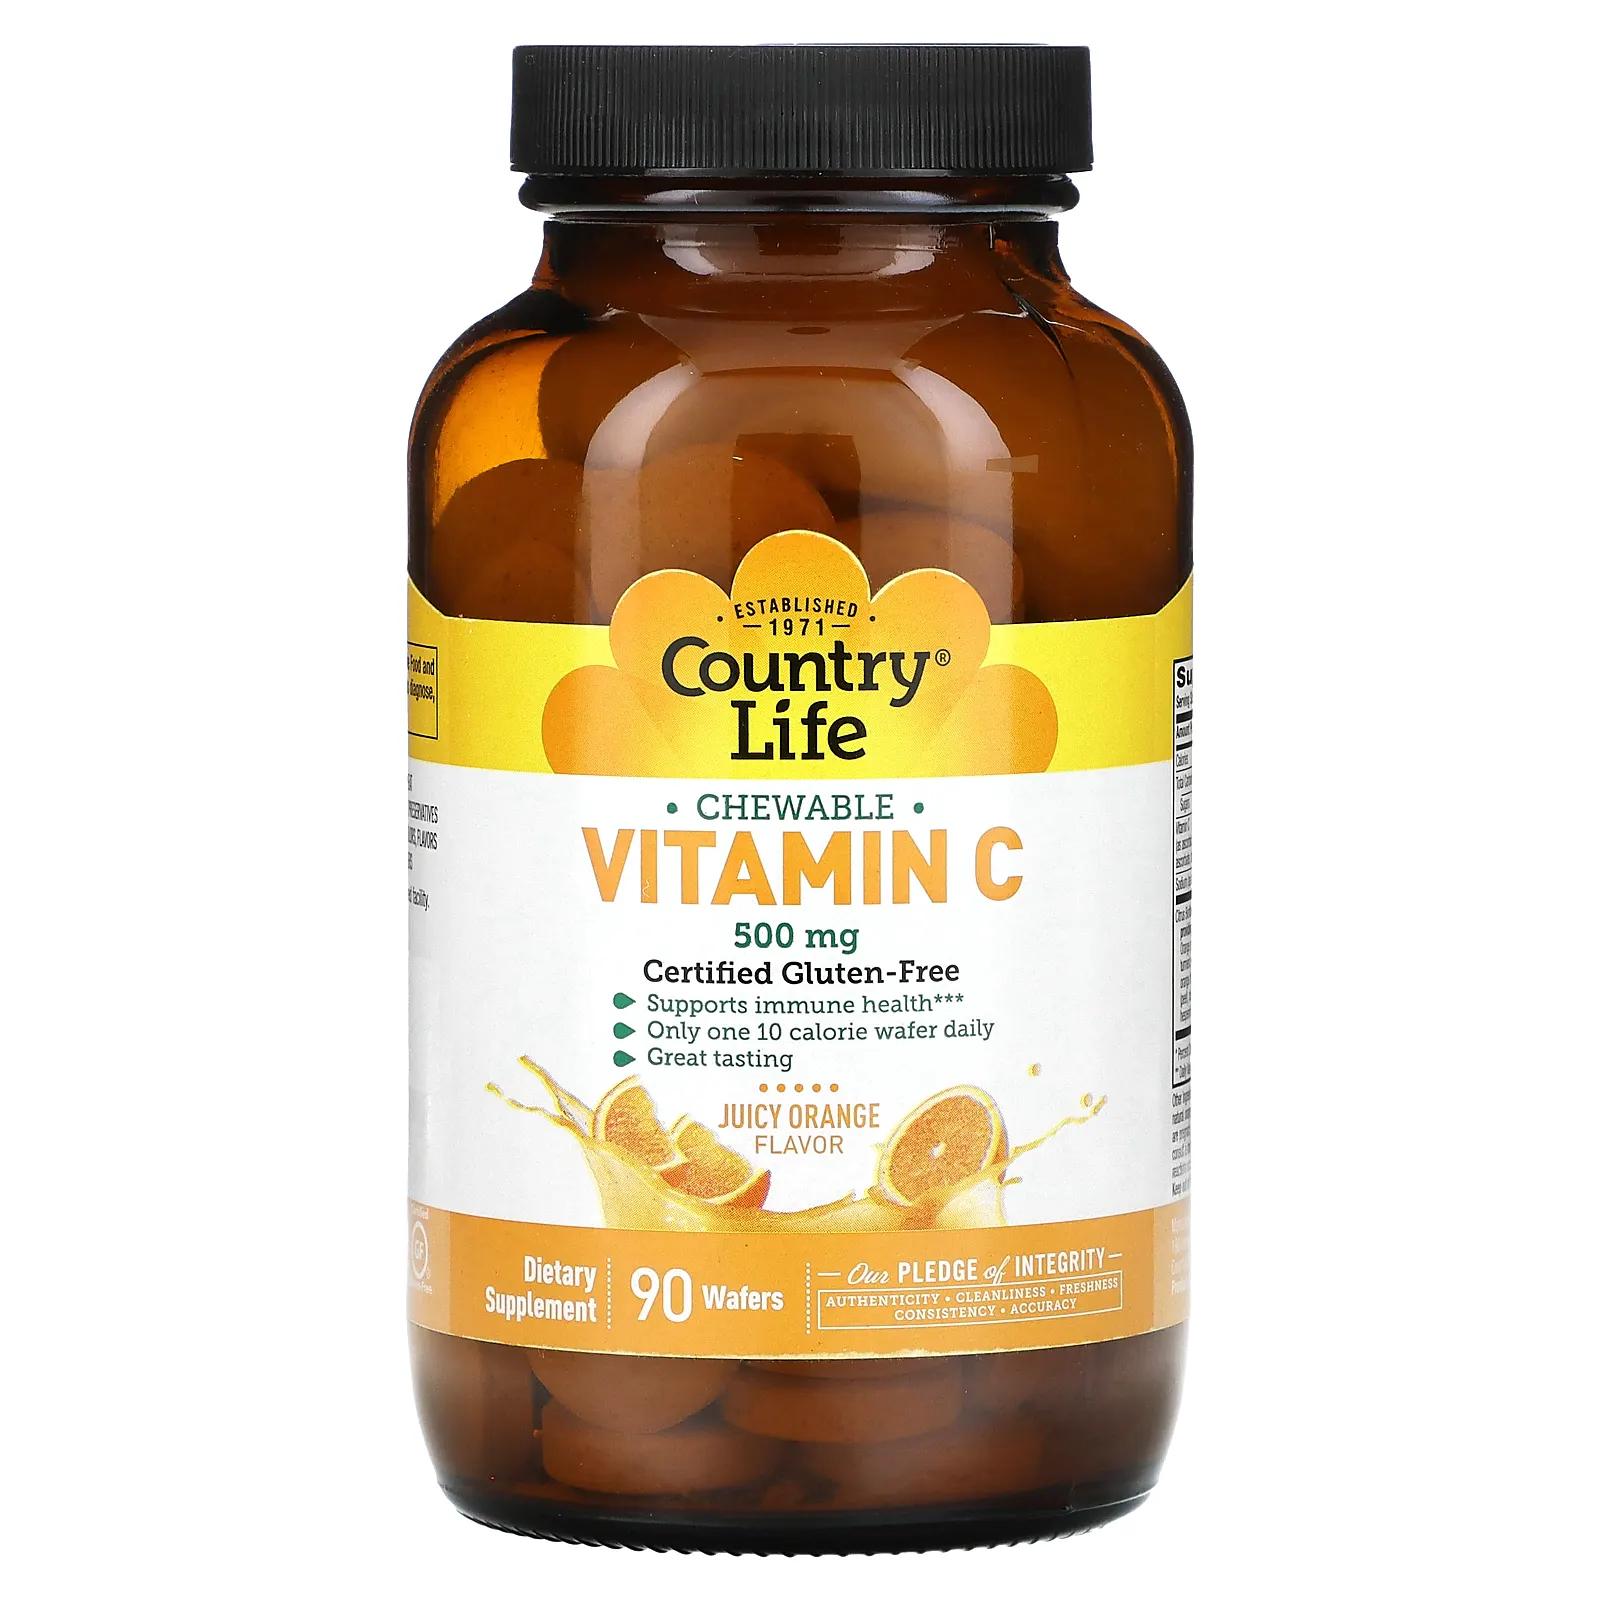 Country Life Витамин С - Жевательный апельсиновый сок 90 вафель